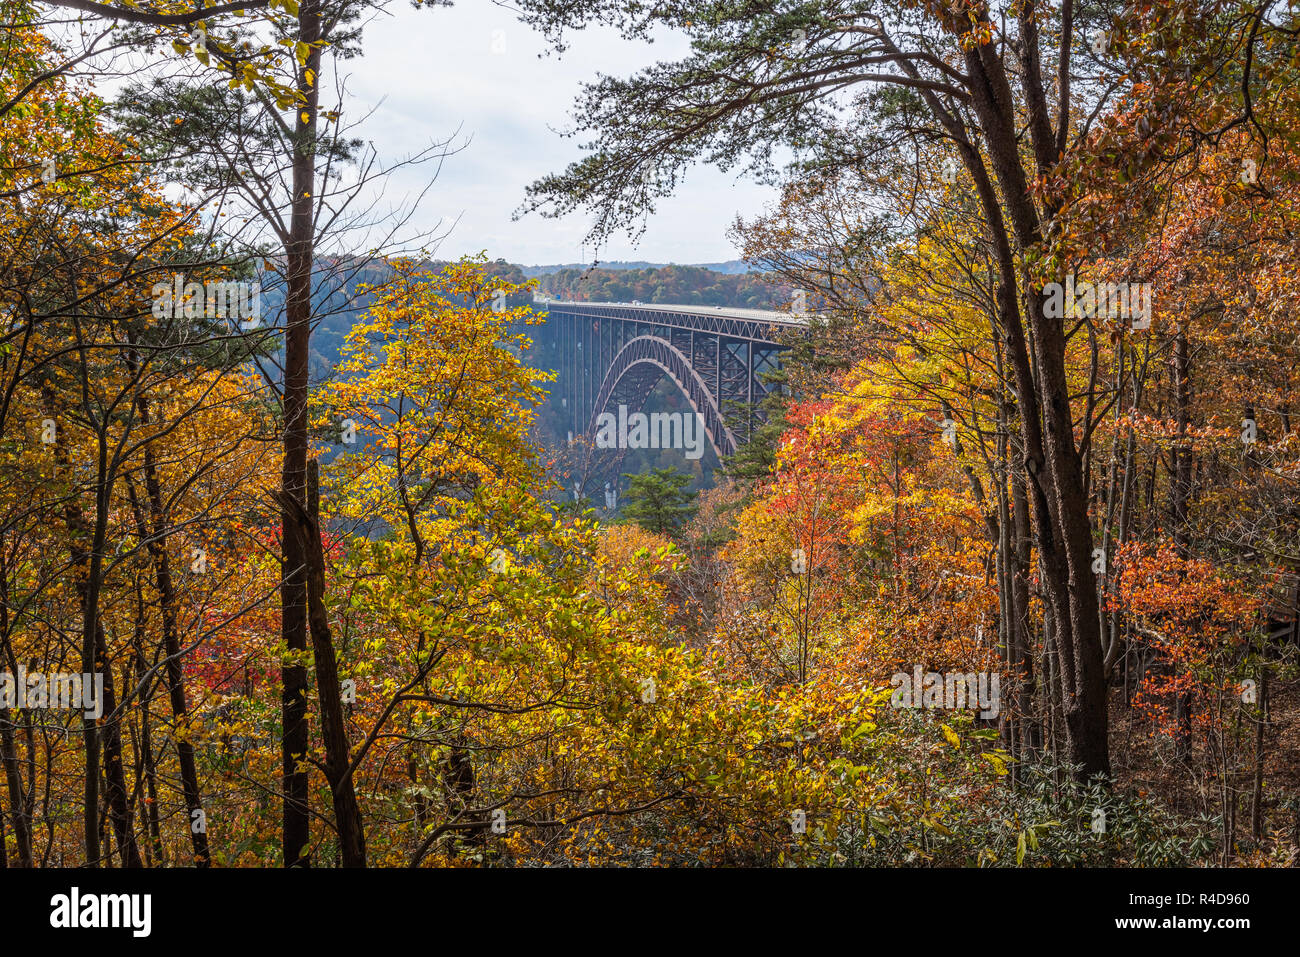 La grande arche en acier New River Gorge Bridge, Virginie Occidentale est encadrée par le feuillage automne coloré comme vu de la centre pour visiteurs du bord du Canyon. Banque D'Images